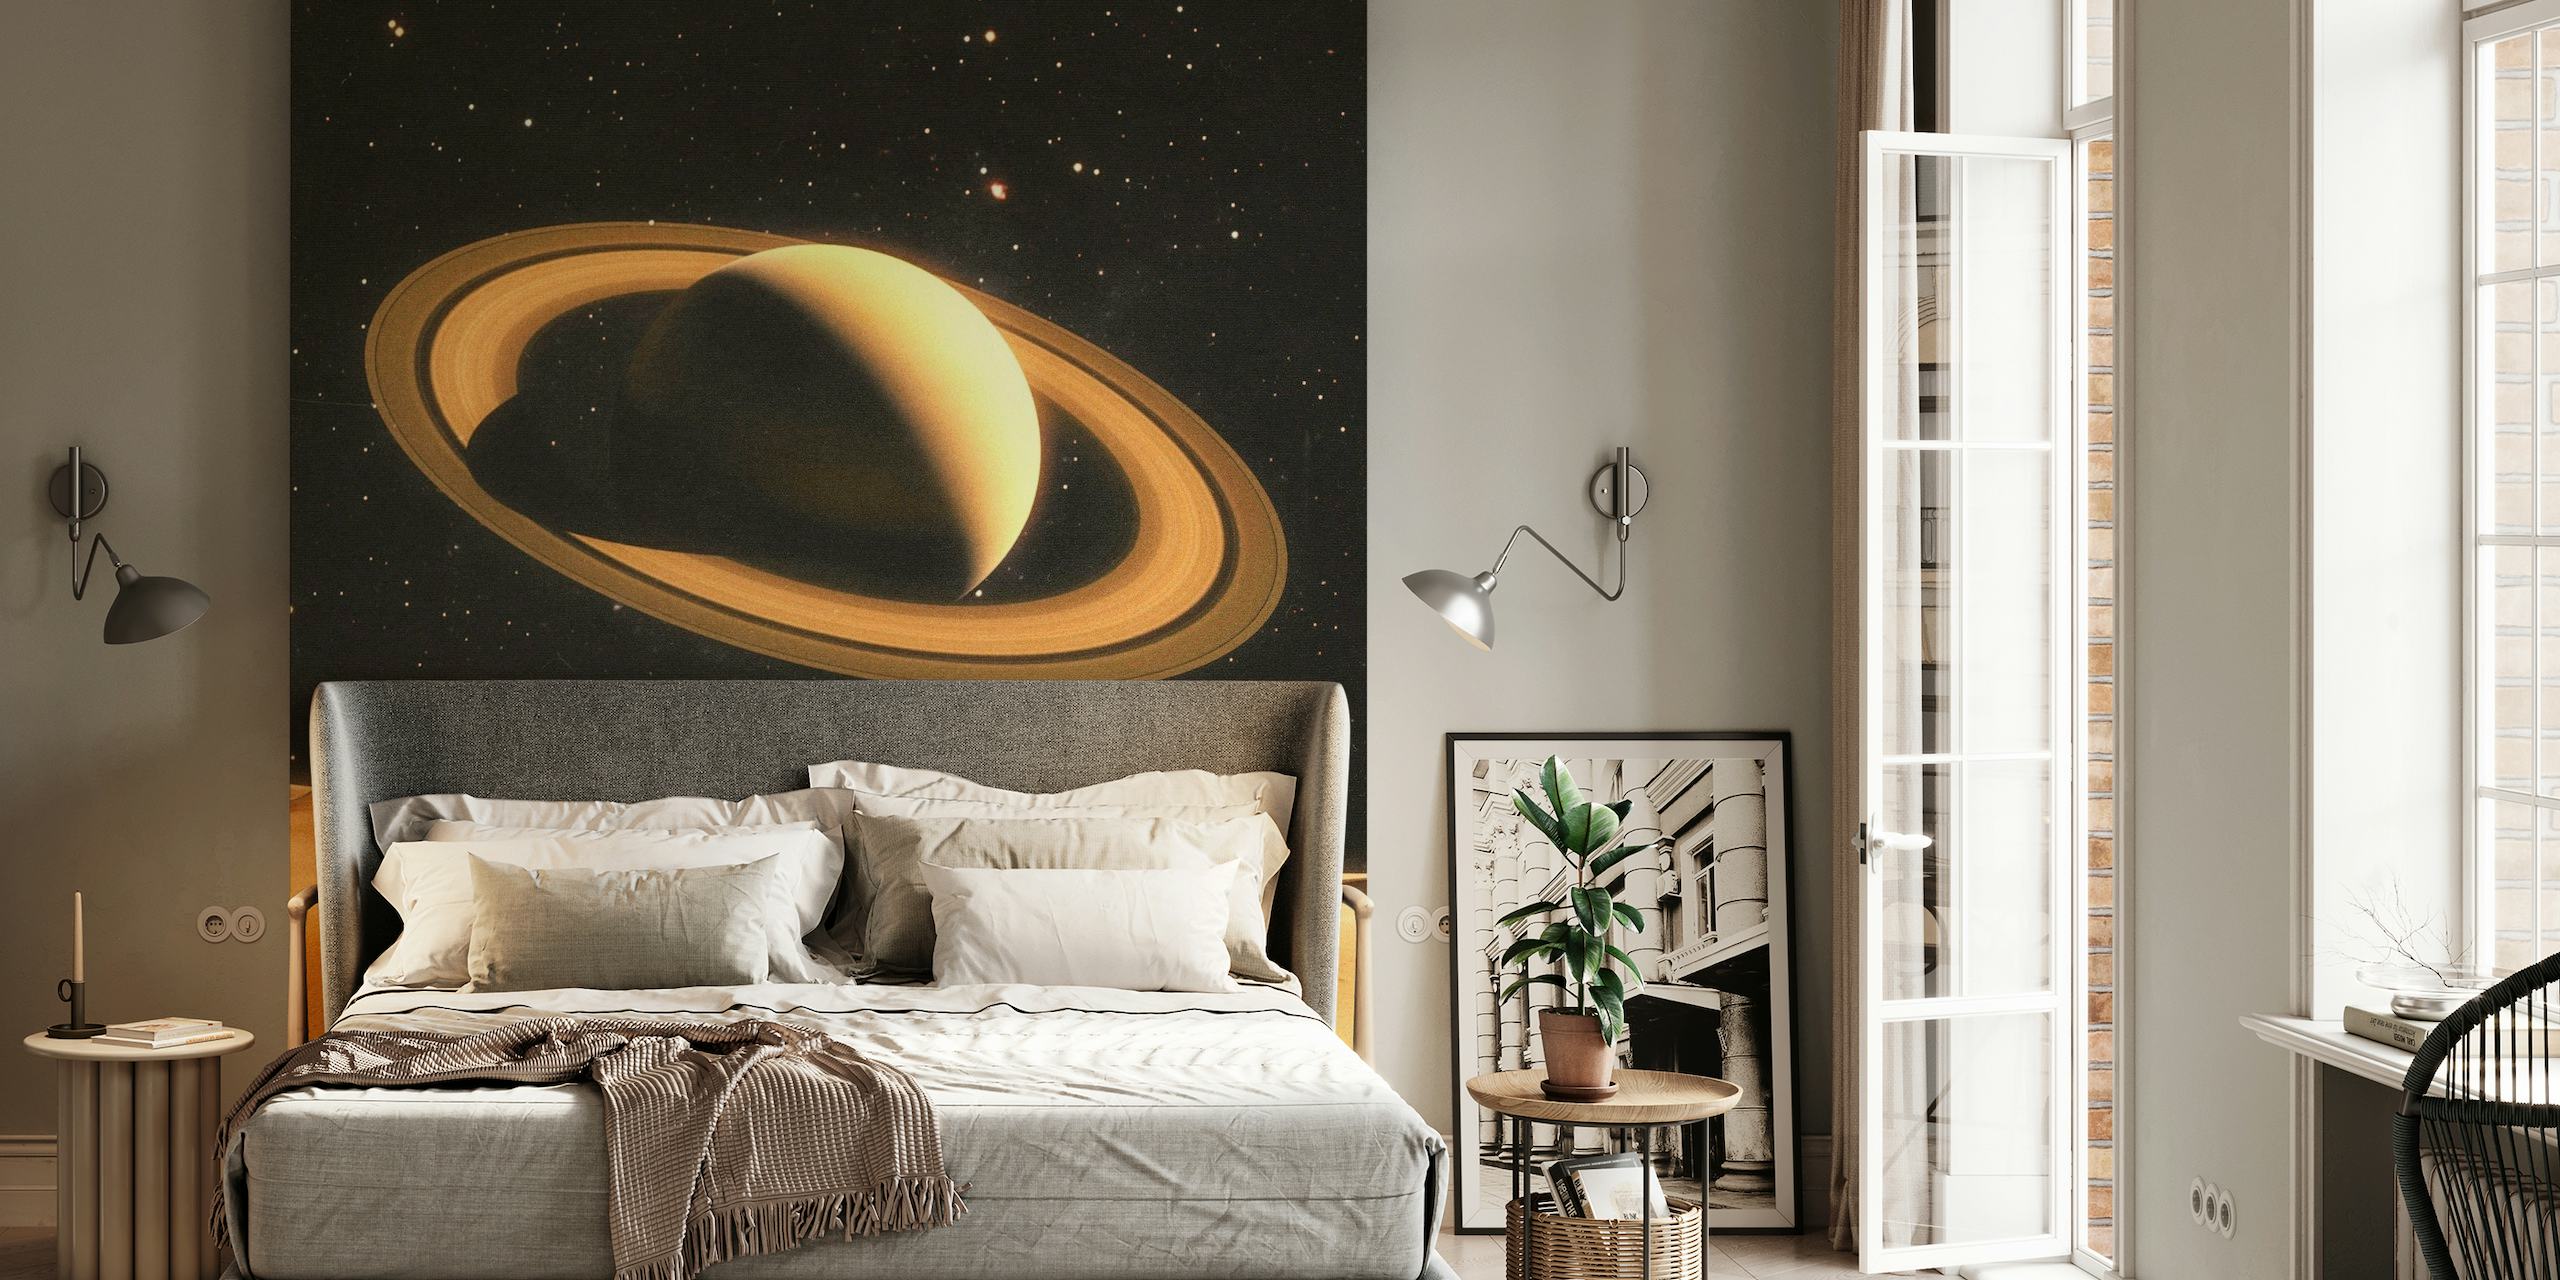 Fototapete von zwei Menschen auf einem wüstenähnlichen Planeten mit Saturn im Hintergrund